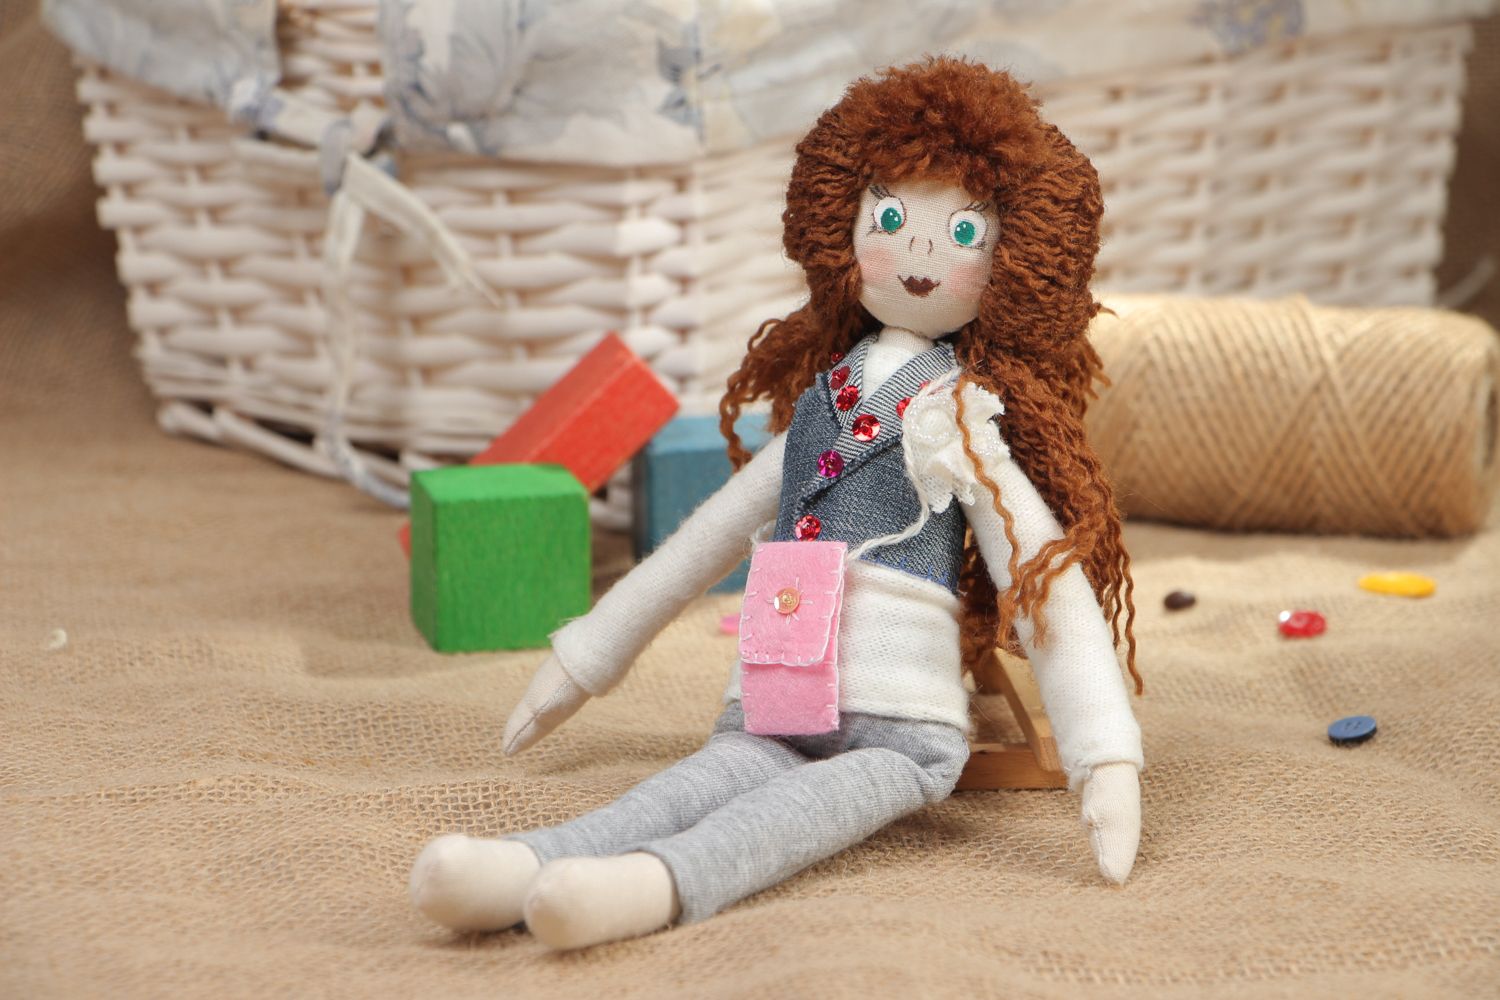 Textil Puppe aus Stoff mit lockigen Haaren Natalie foto 5